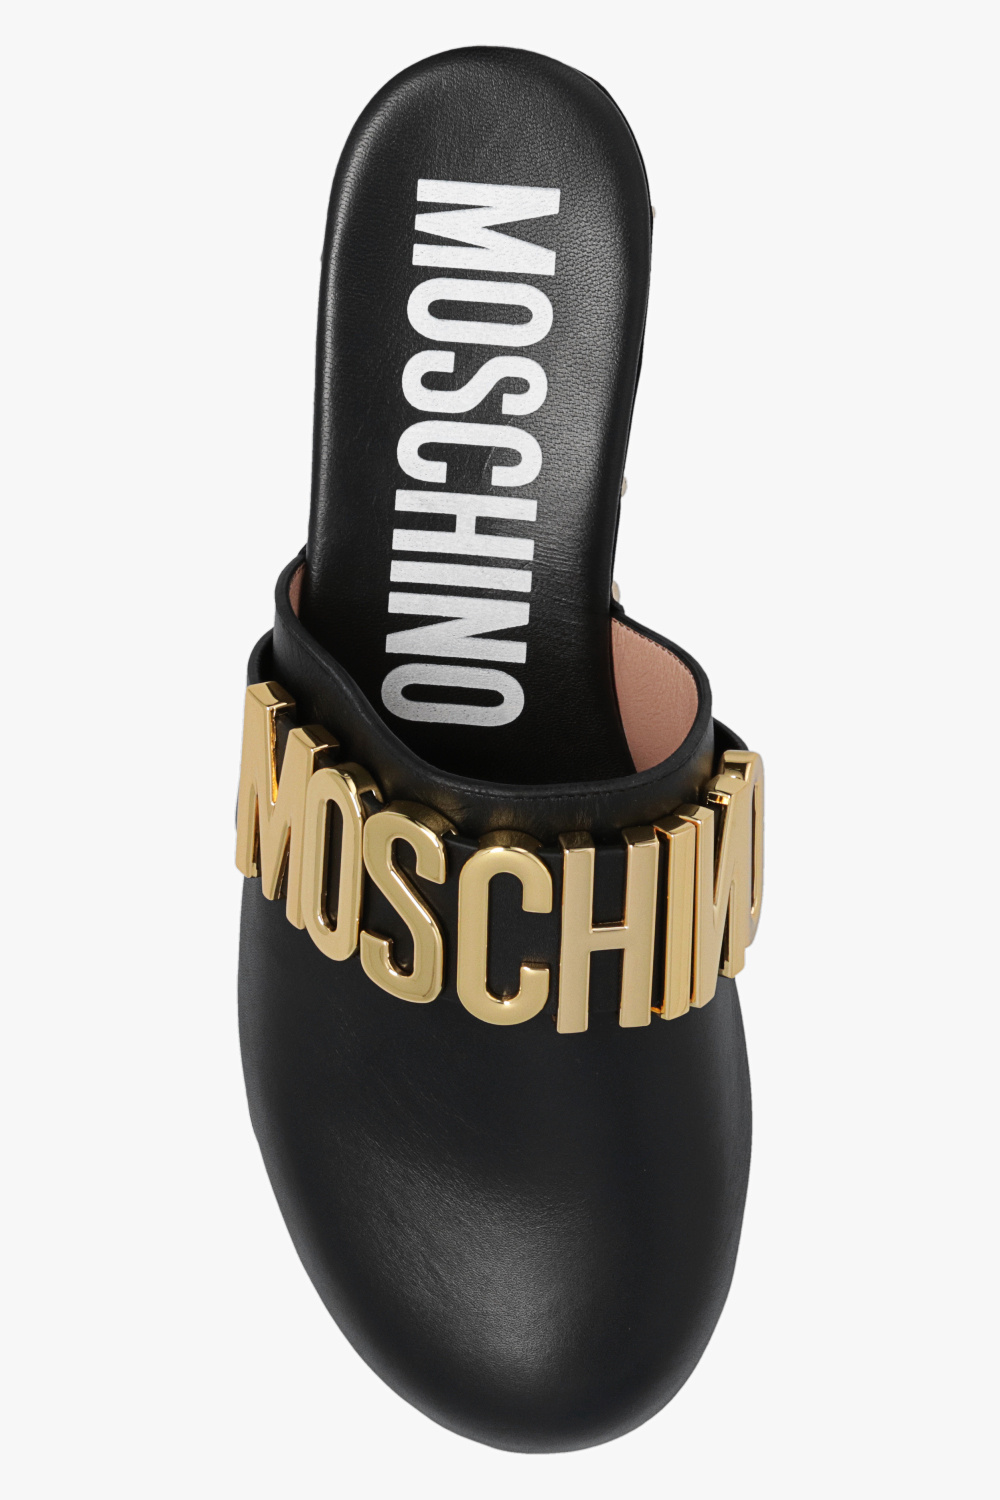 Moschino Originals Superstar J H04025 shoes